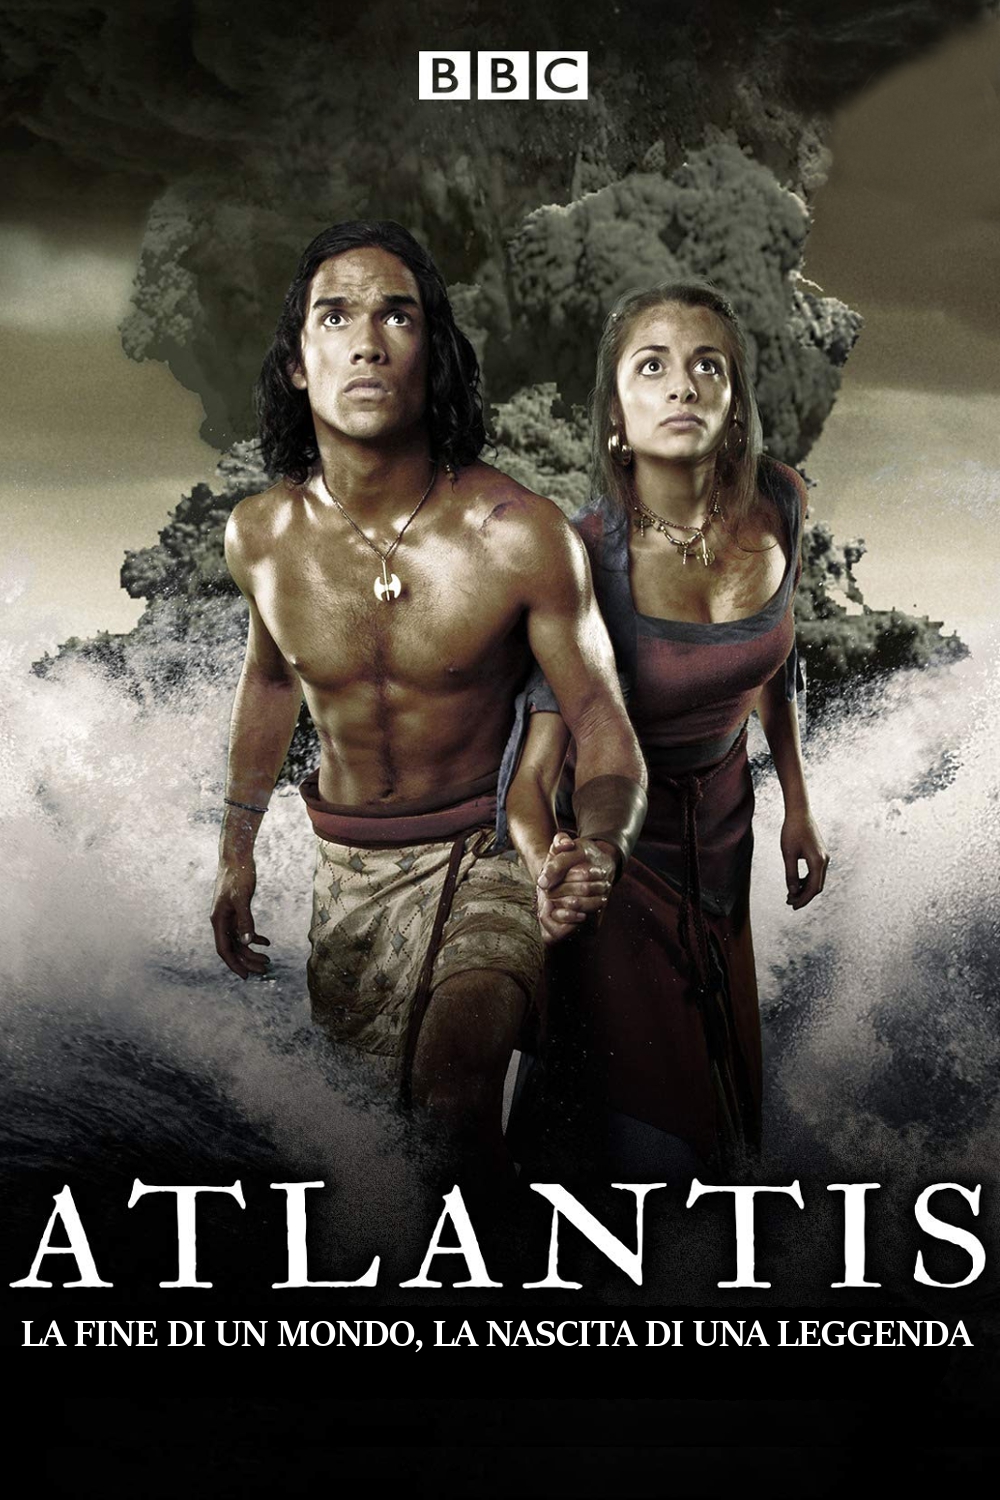 Atlantis – La fine di un mondo, la nascita di una leggenda [HD] (2011)